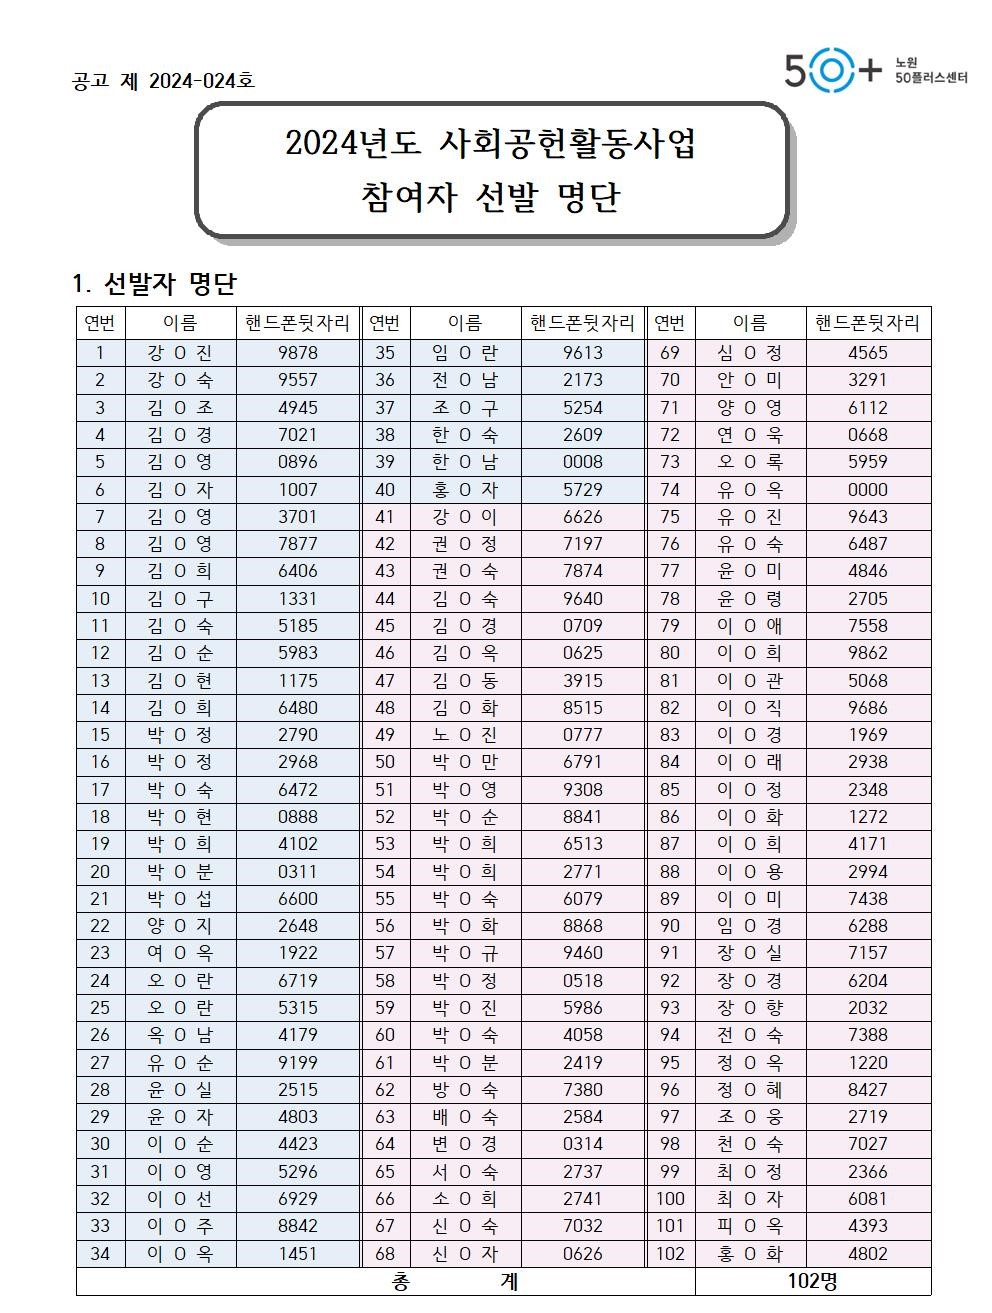 24사회공헌+선발자공고+명단-주임님+수정본2001.jpg